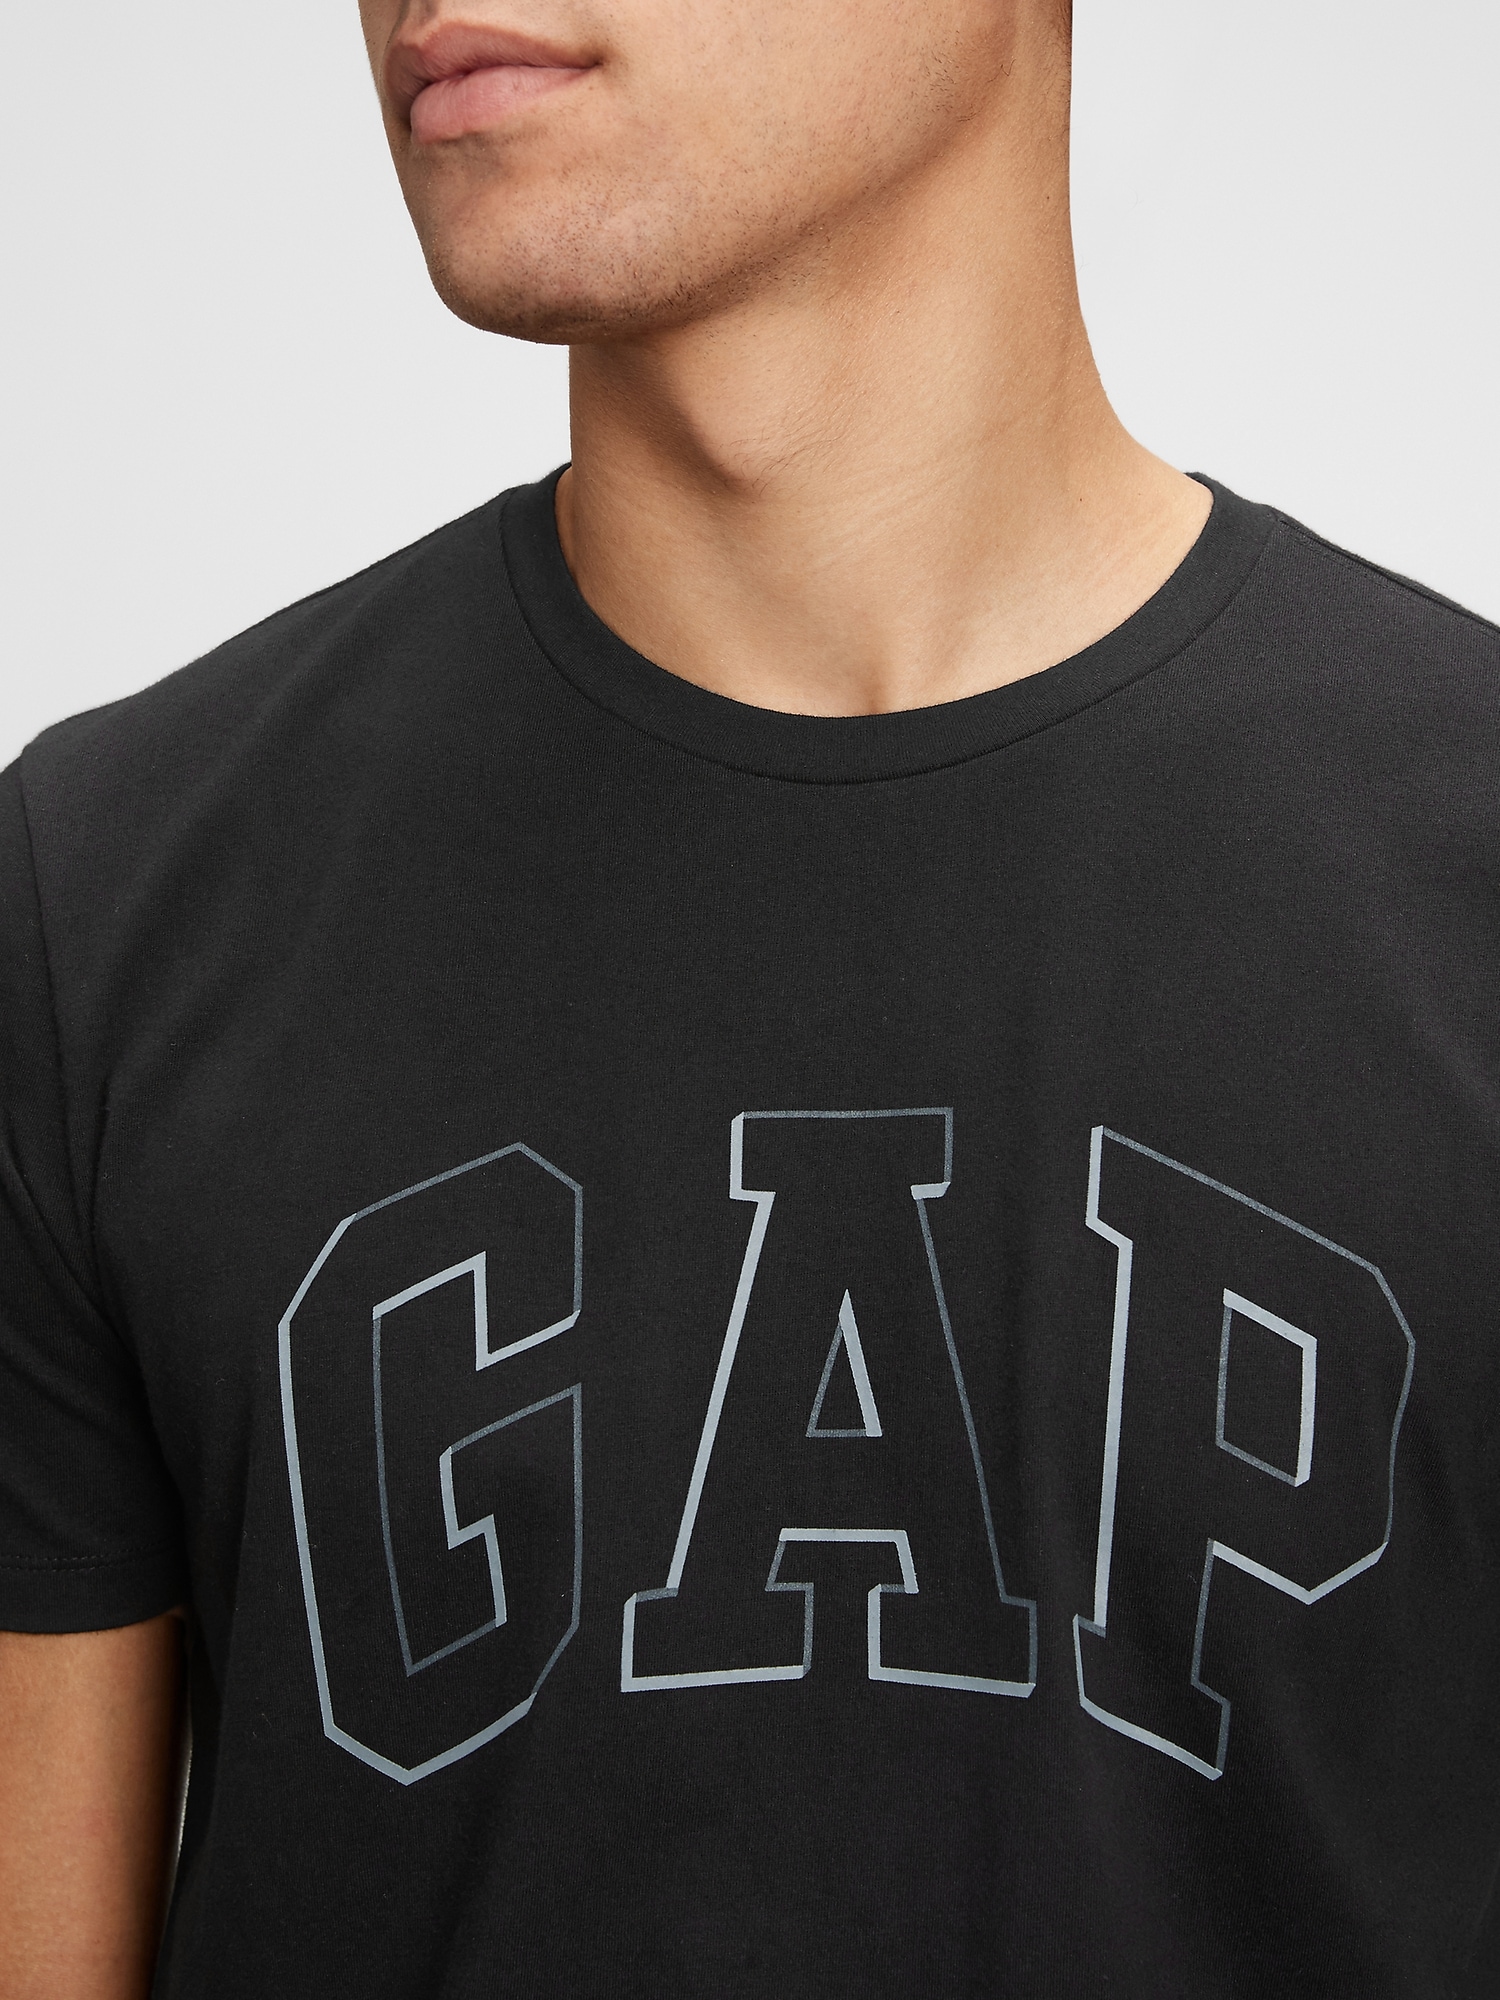 Gap Logo T-Shirt. 4